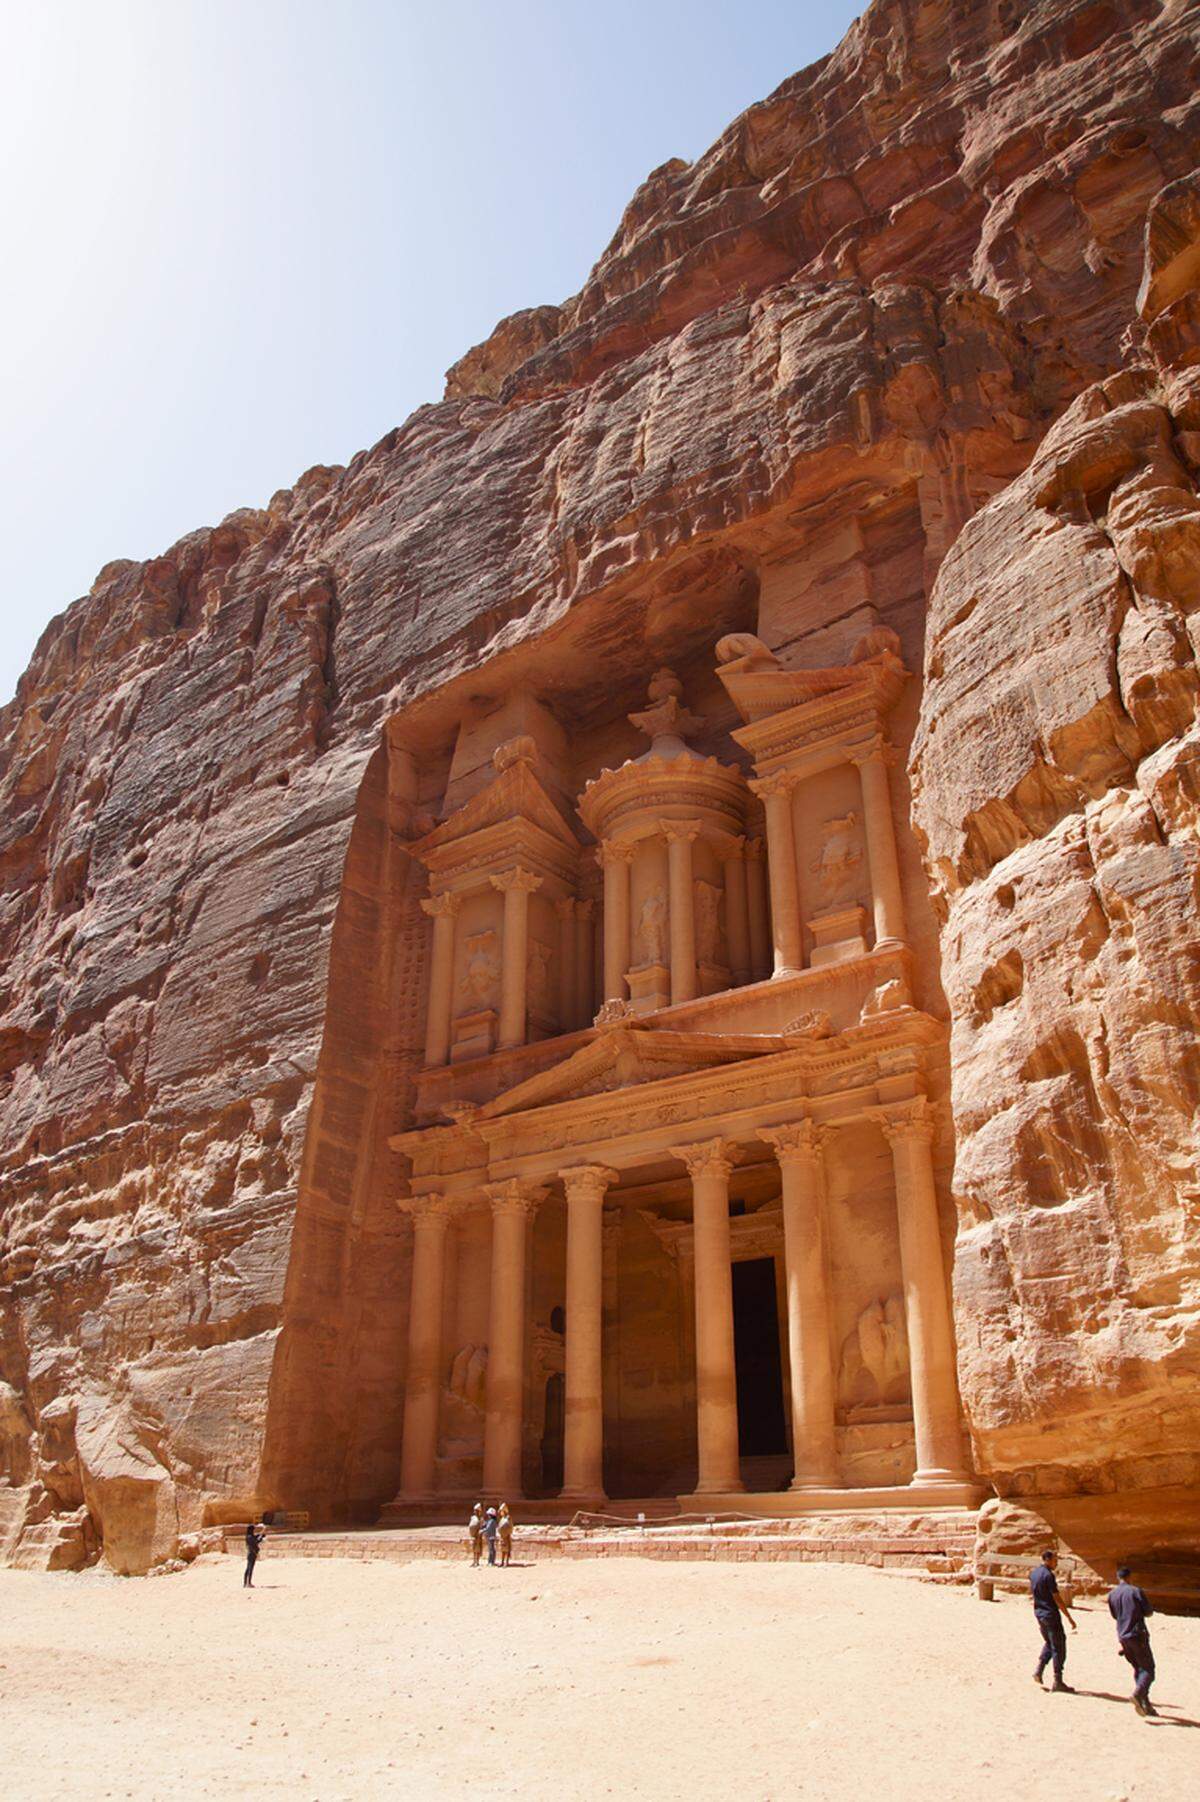 Die alte Nabatäer-Stadt Petra zählt zu den Highlights in Jordanien. Das 40 Meter hohe Schatzhaus hier im Bild beeindruckt nicht nur durch seine schiere Größe, sondern vor allem durch die hohe Kunstfertigkeit. Es ist über 2000 Jahre alt.